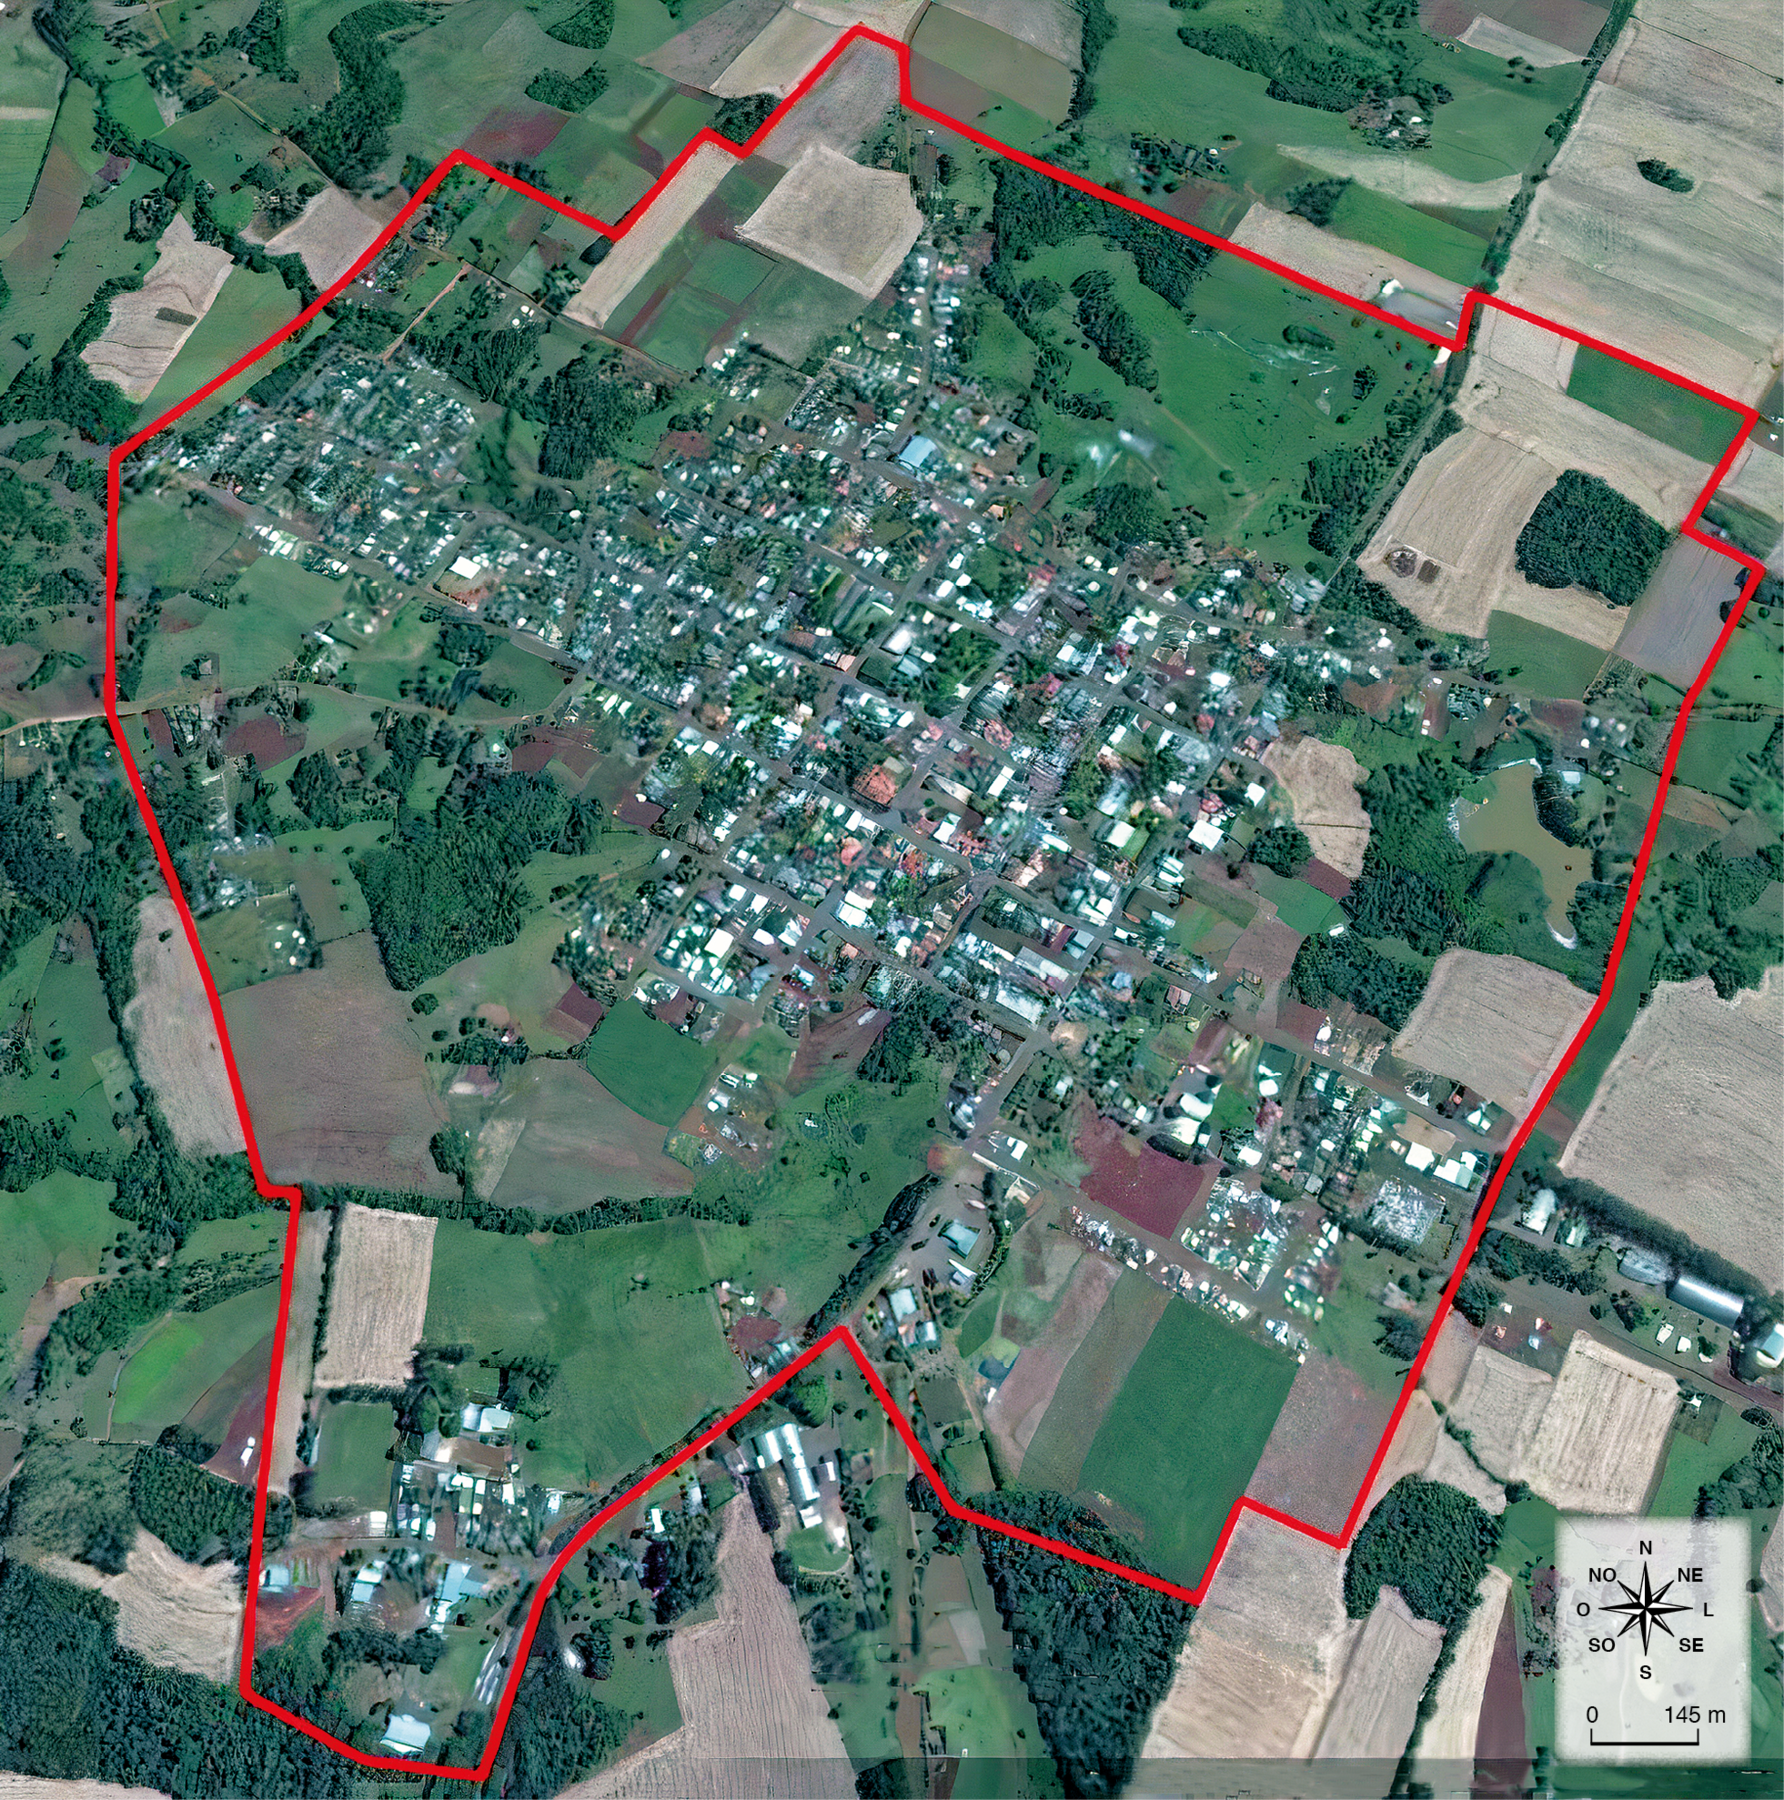 Fotografia.
Vista aérea de um município com construções e vegetação ao redor. Uma linha vermelha contorna o limite do município.